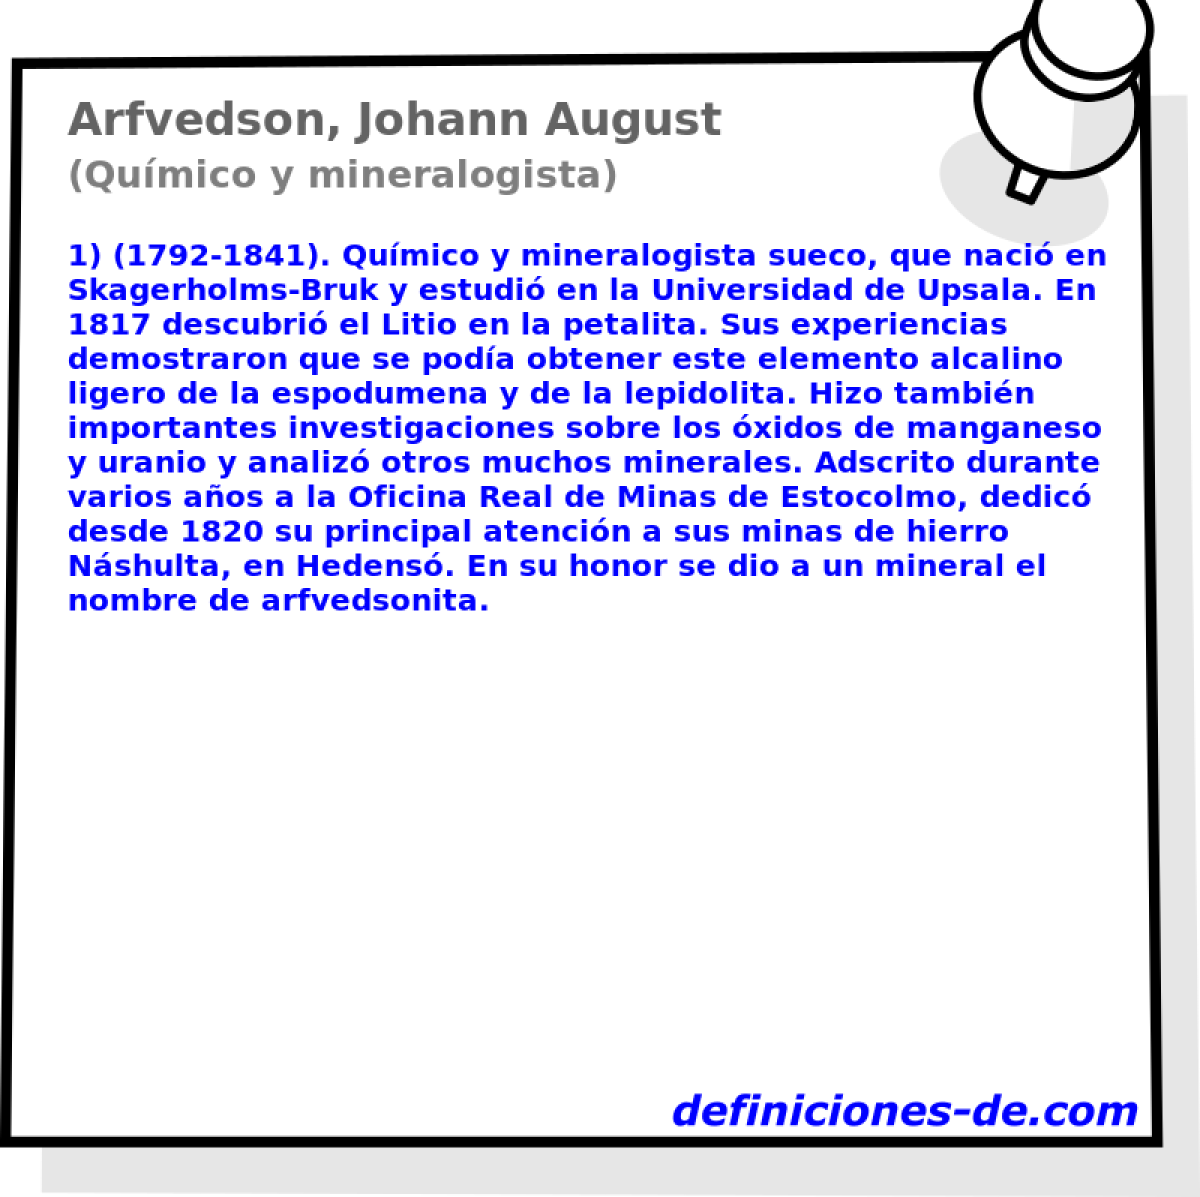 Arfvedson, Johann August (Qumico y mineralogista)